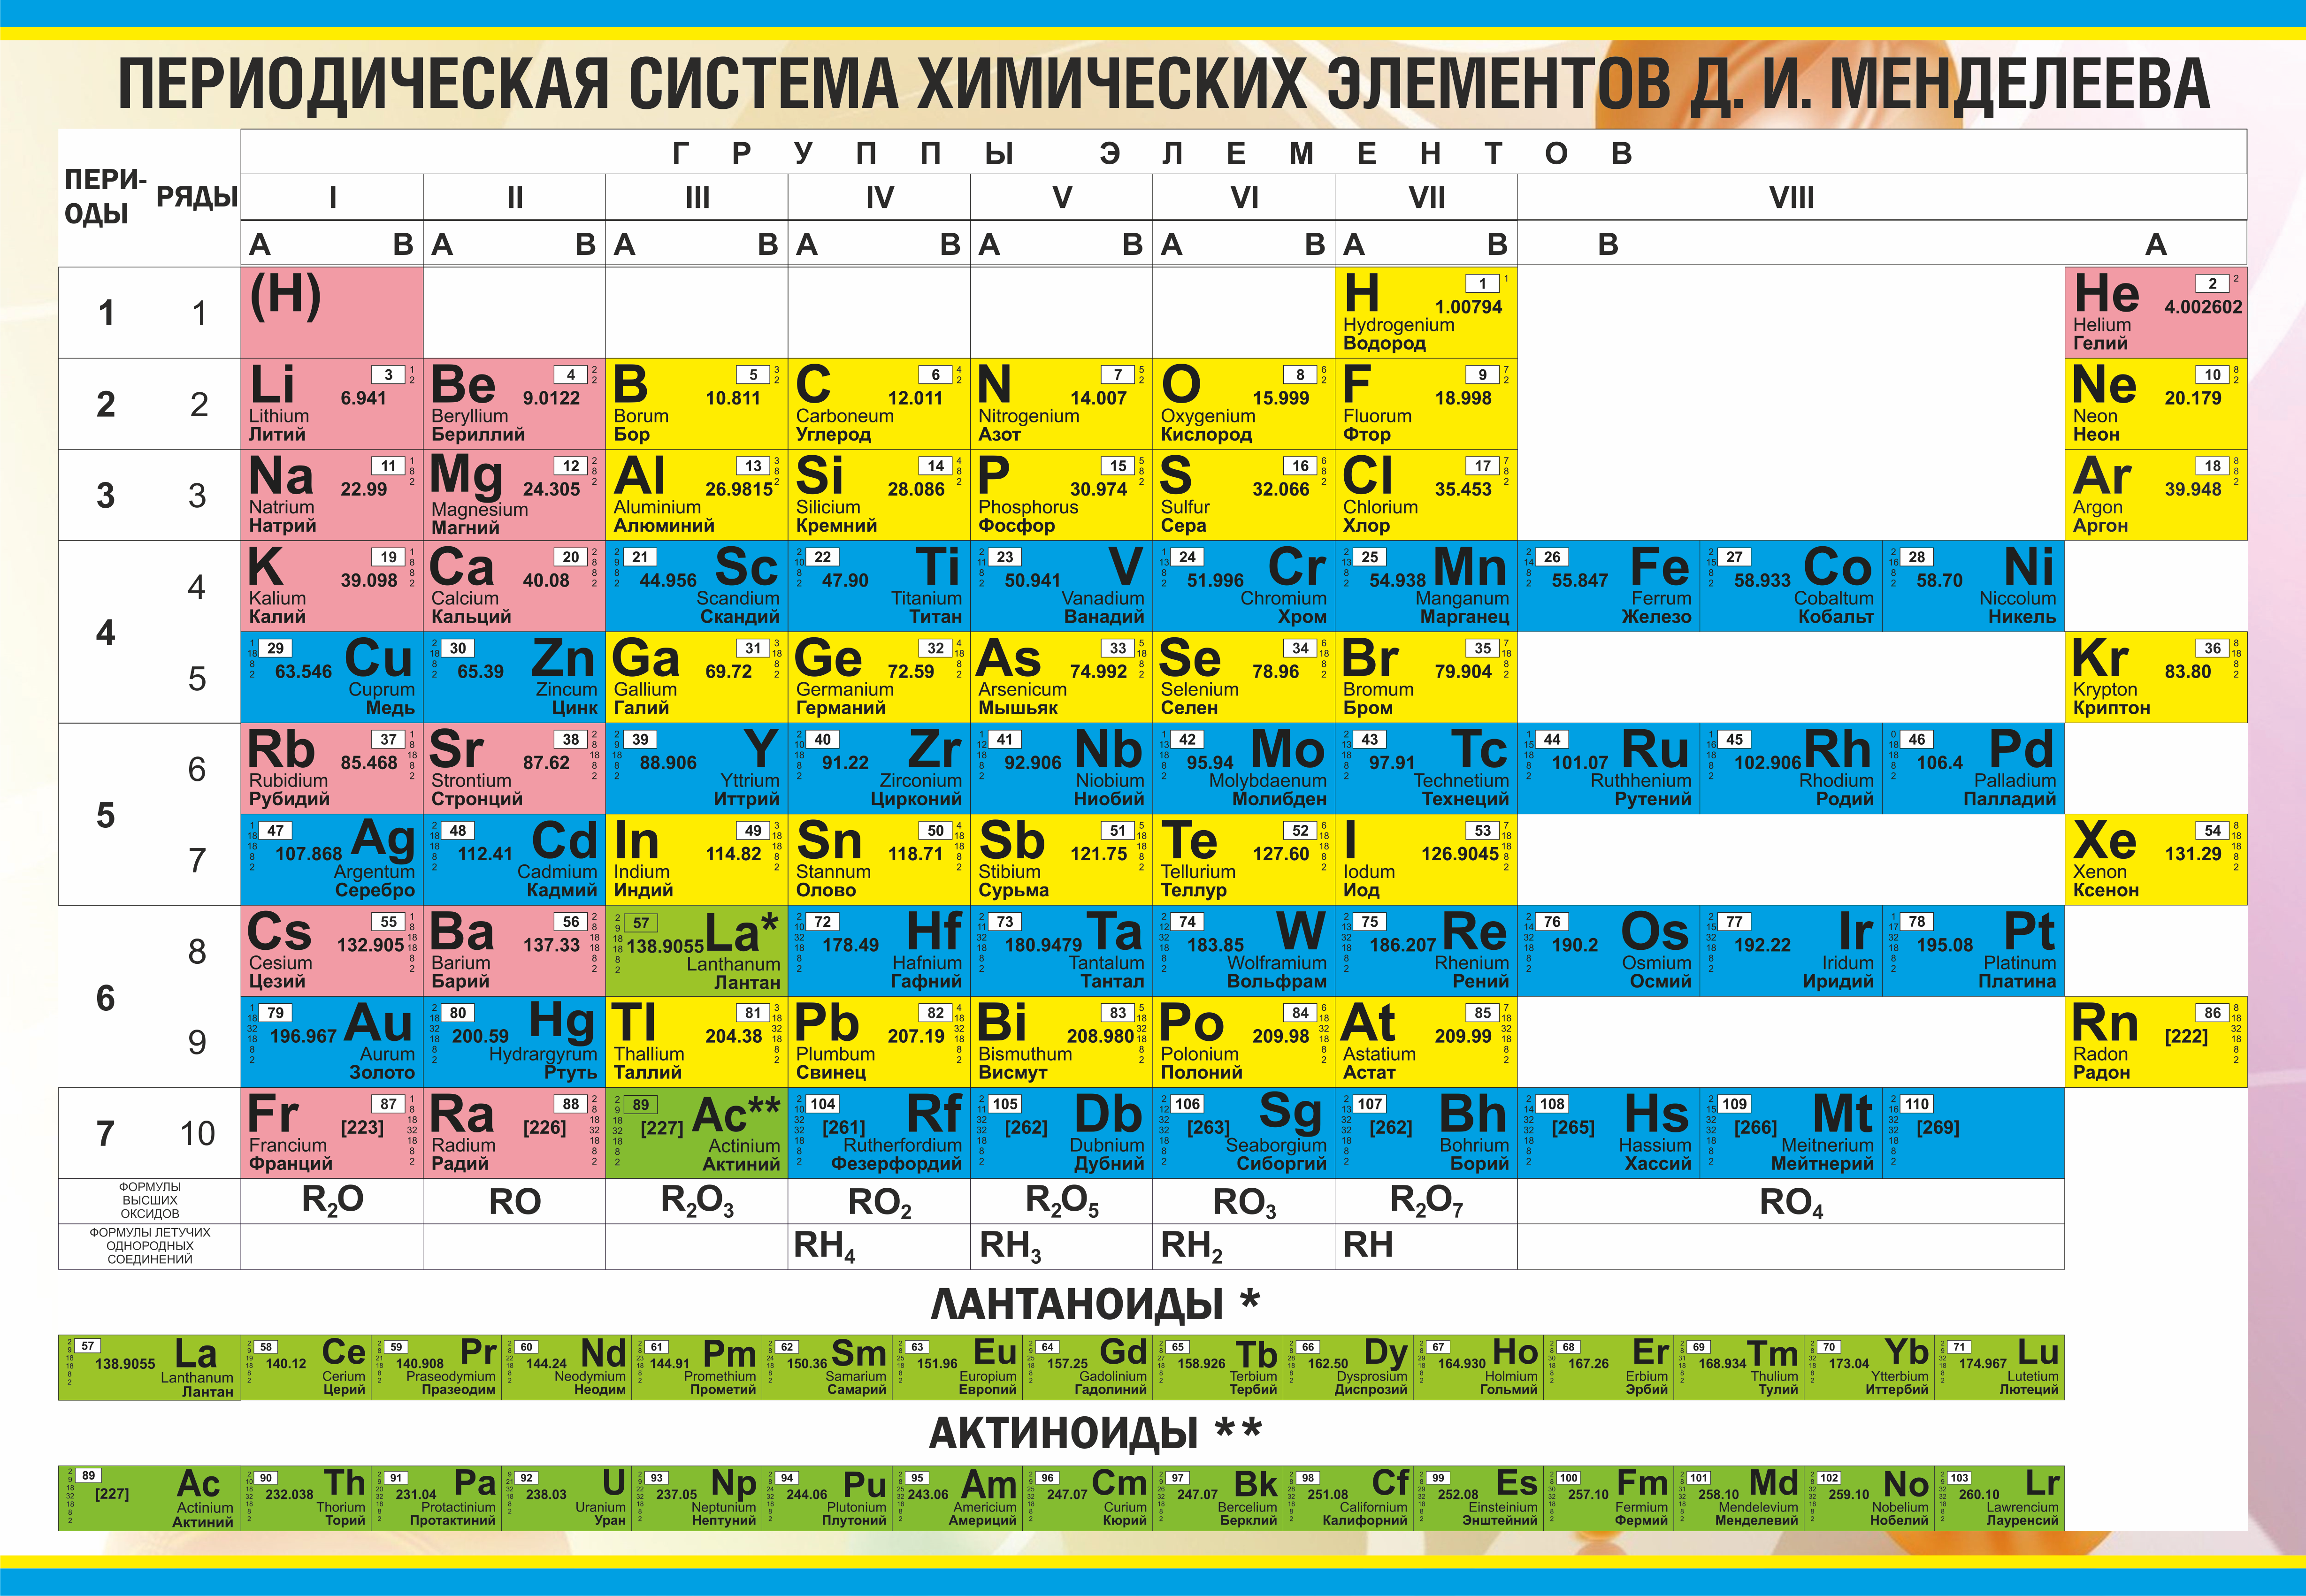 0 группа элементов. Таблица периодических элементов Менделеева. Современная таблица Менделеева 118 элементов. Элемент м в таблице Менделеева.